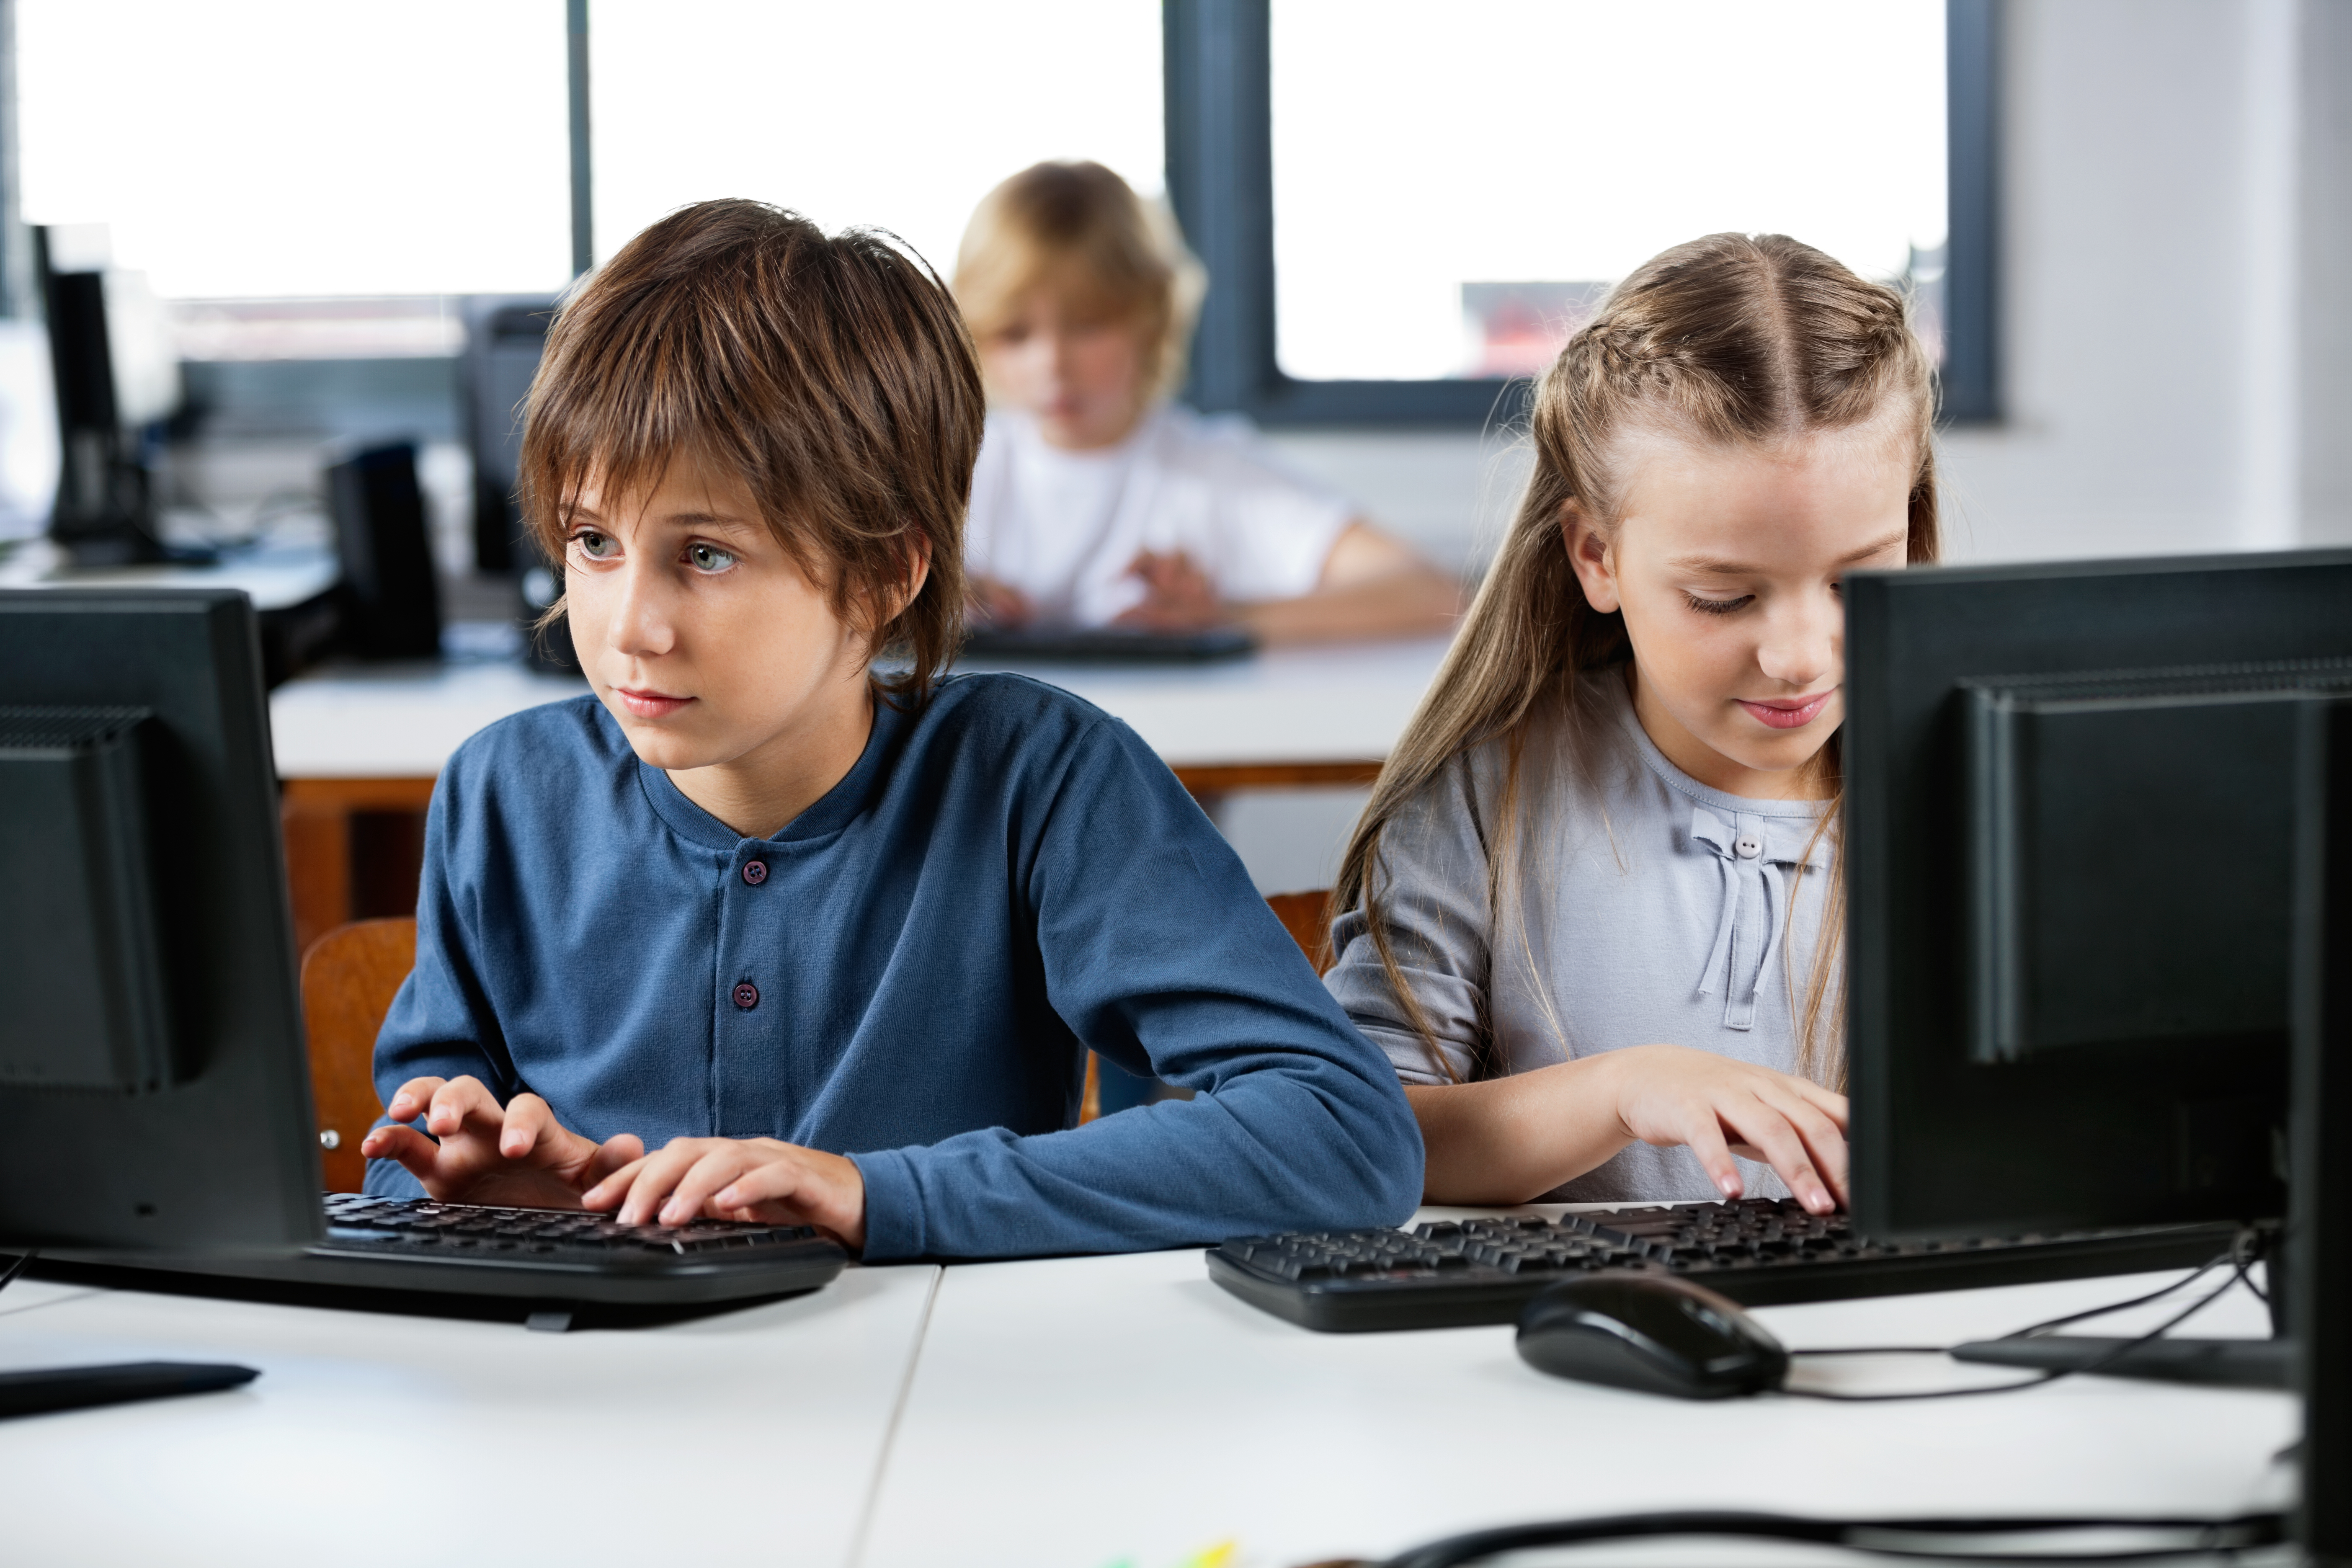 Ютуб дети на компьютере. Ребенок за компьютером. Ученик за компьютером. Компьютер для детей. Дети за компьютером в школе.